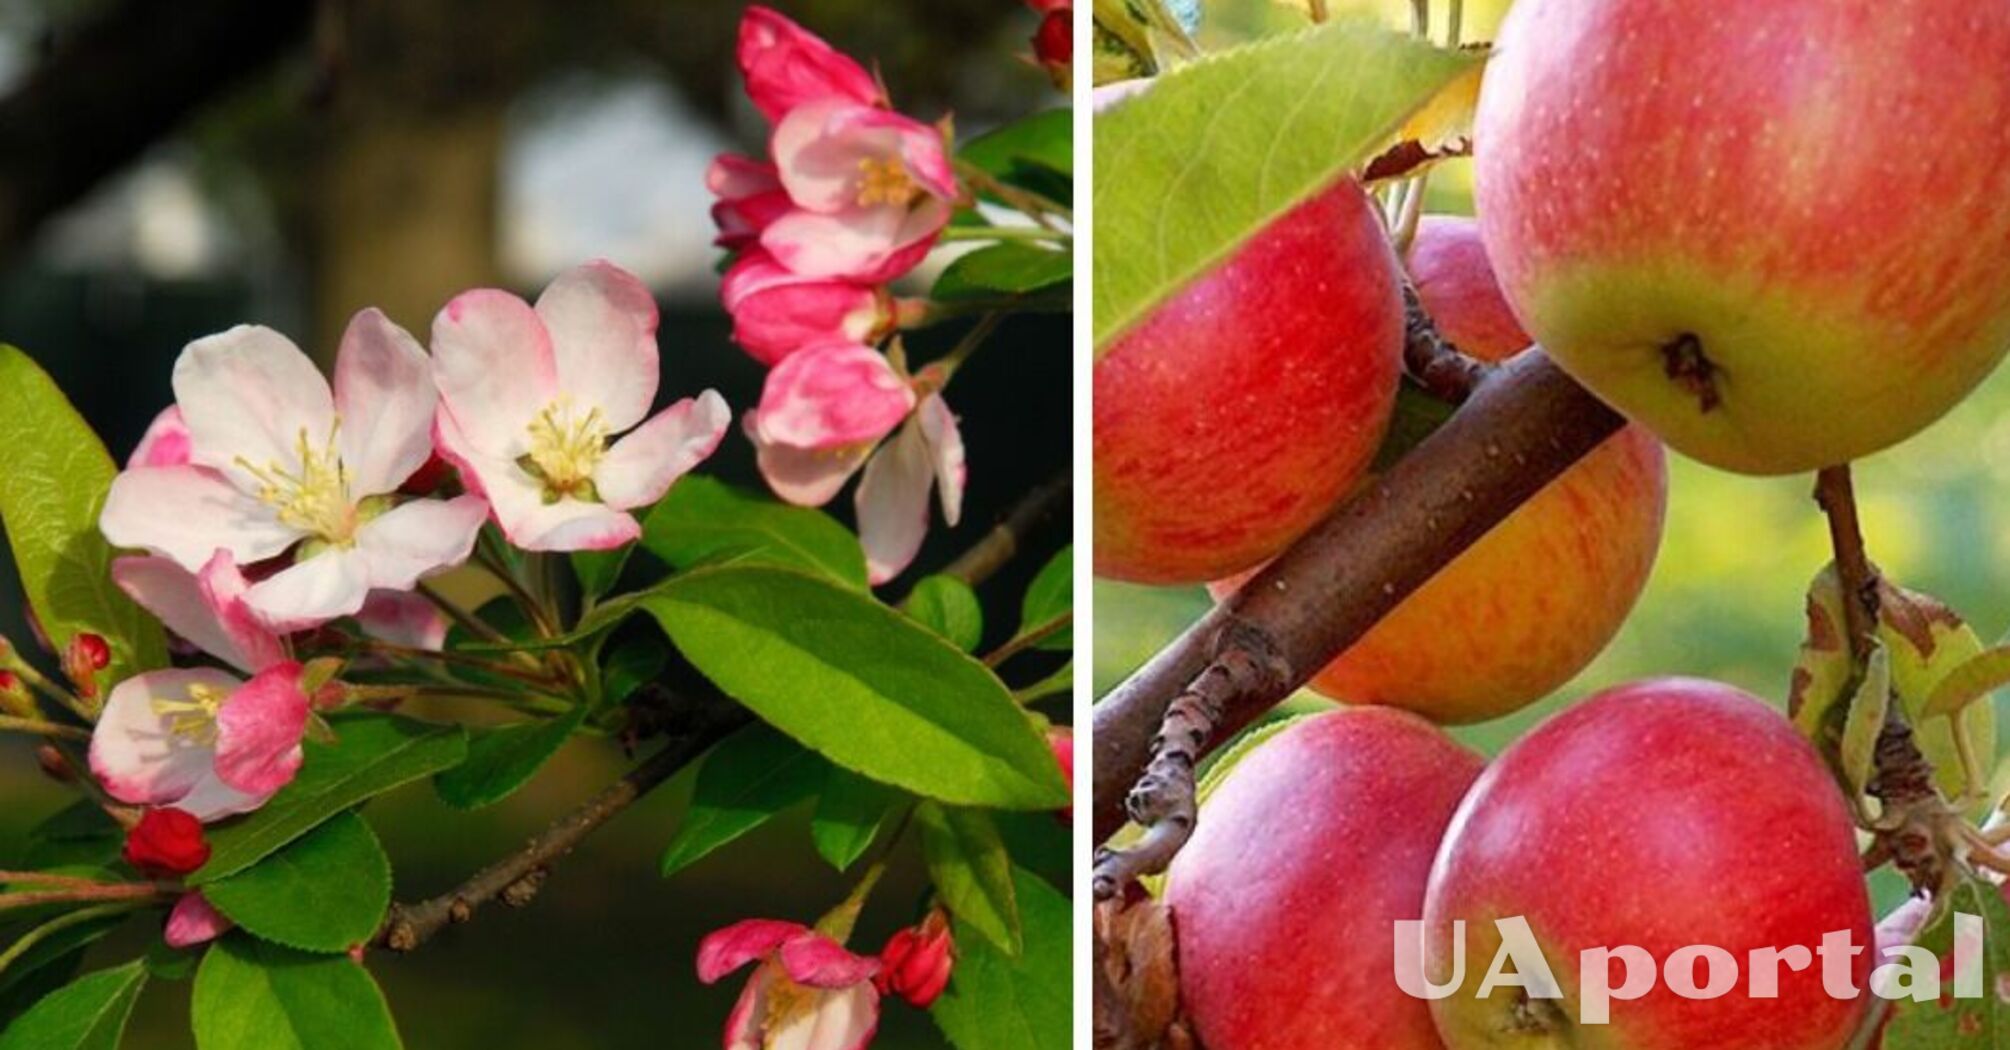 Що зробити з яблунями, щоб плоди були величезними: поради досвідчених садівників